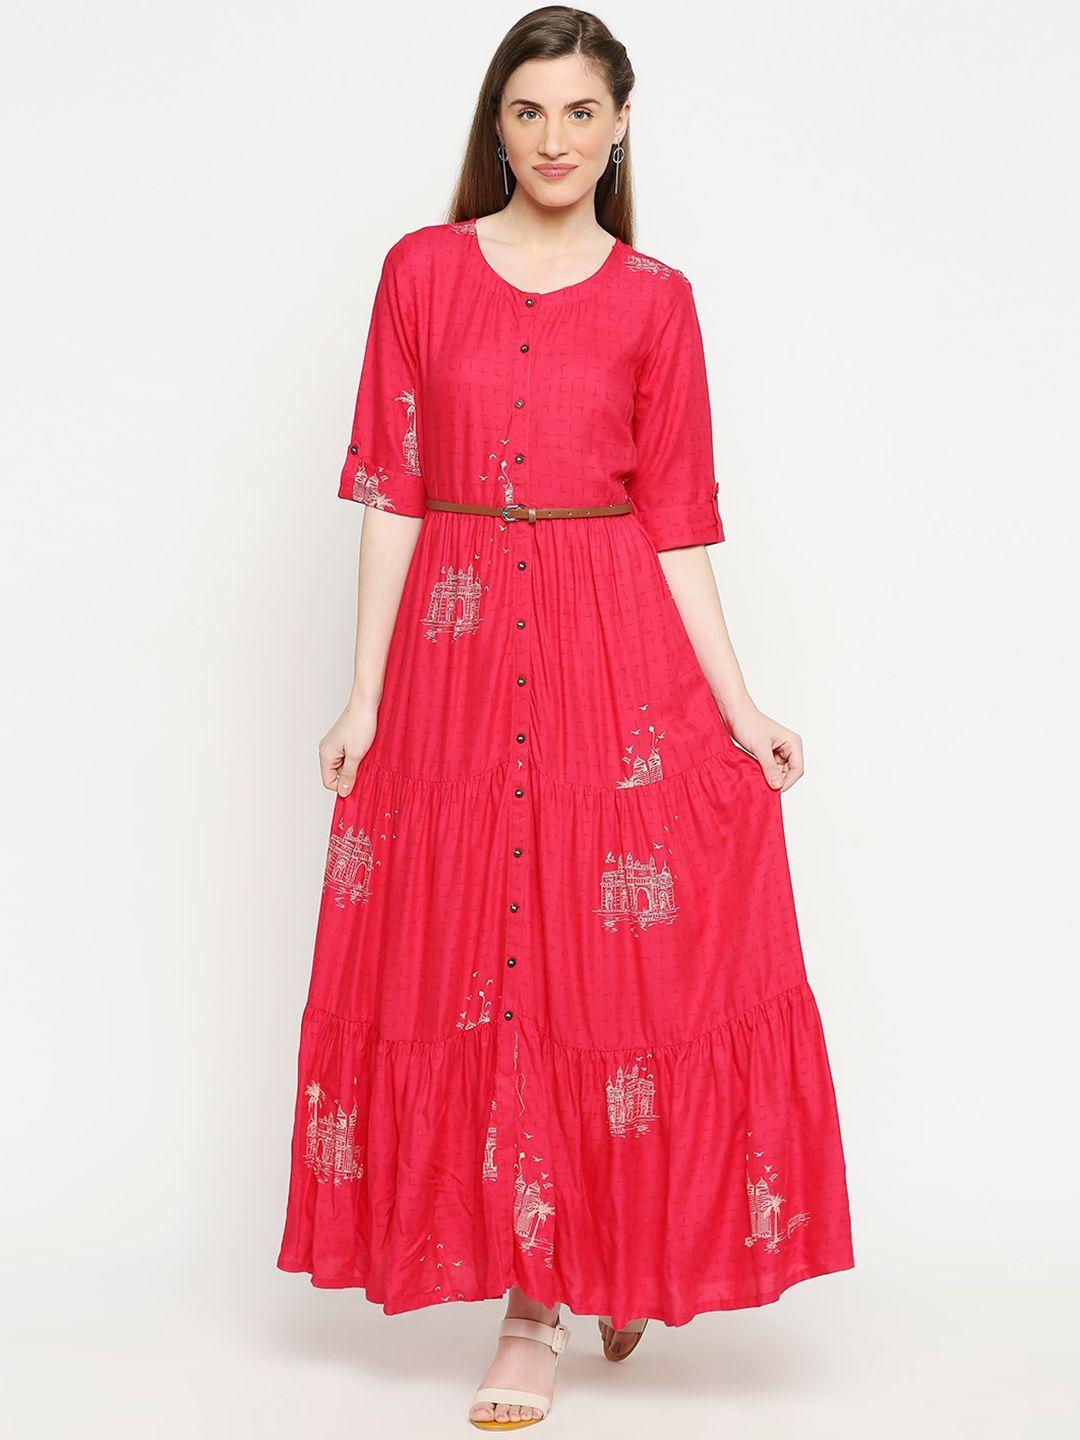 akkriti by pantaloons women fuchsia red printed ethnic maxi dress